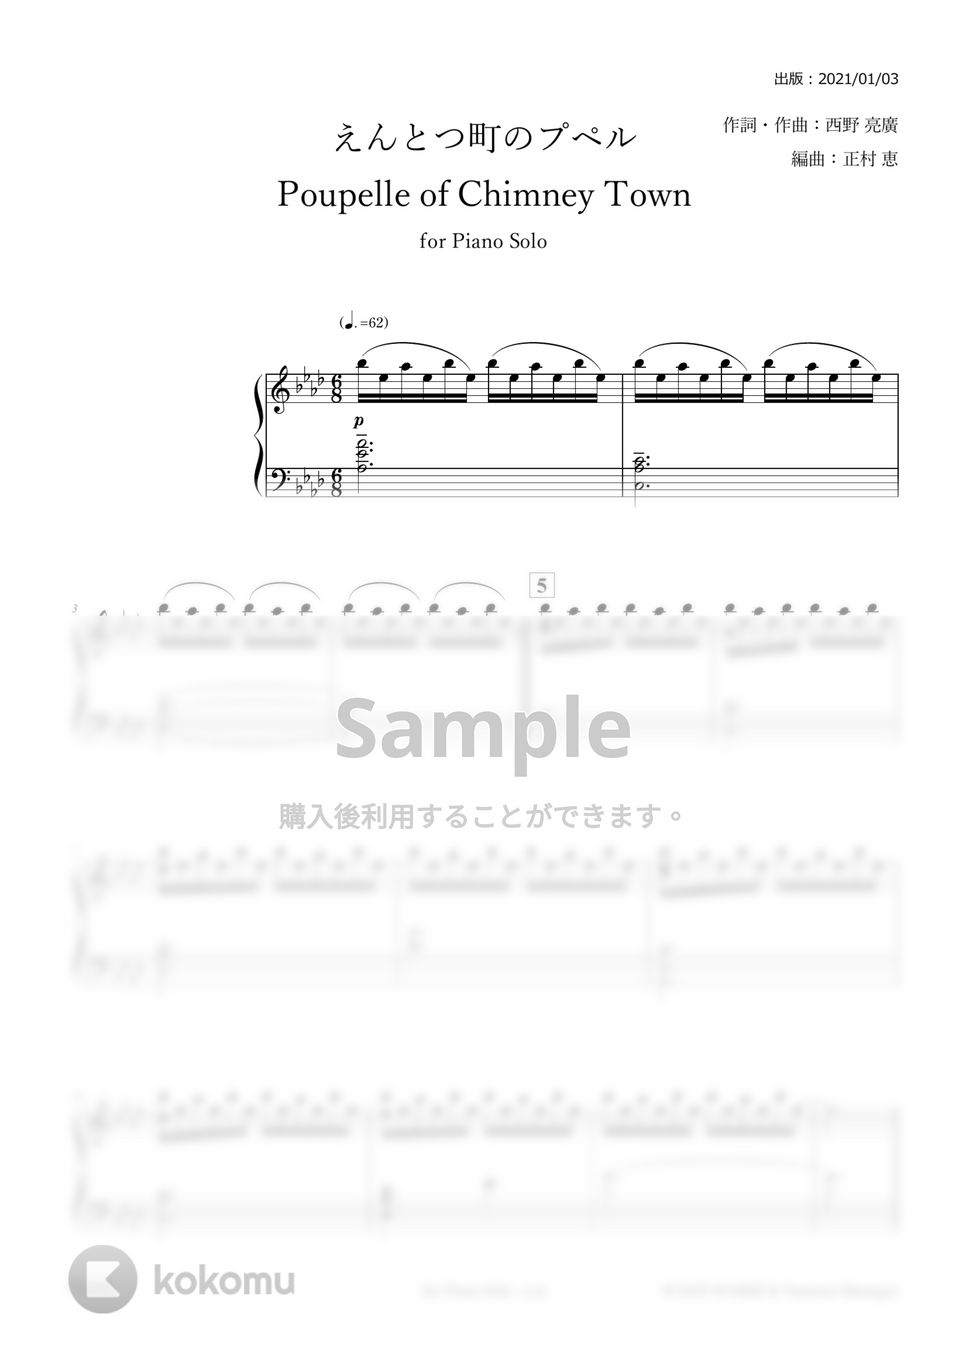 エンドクレジット版 - えんとつ町のプペル (ピアノソロ・上級) by 正村恵